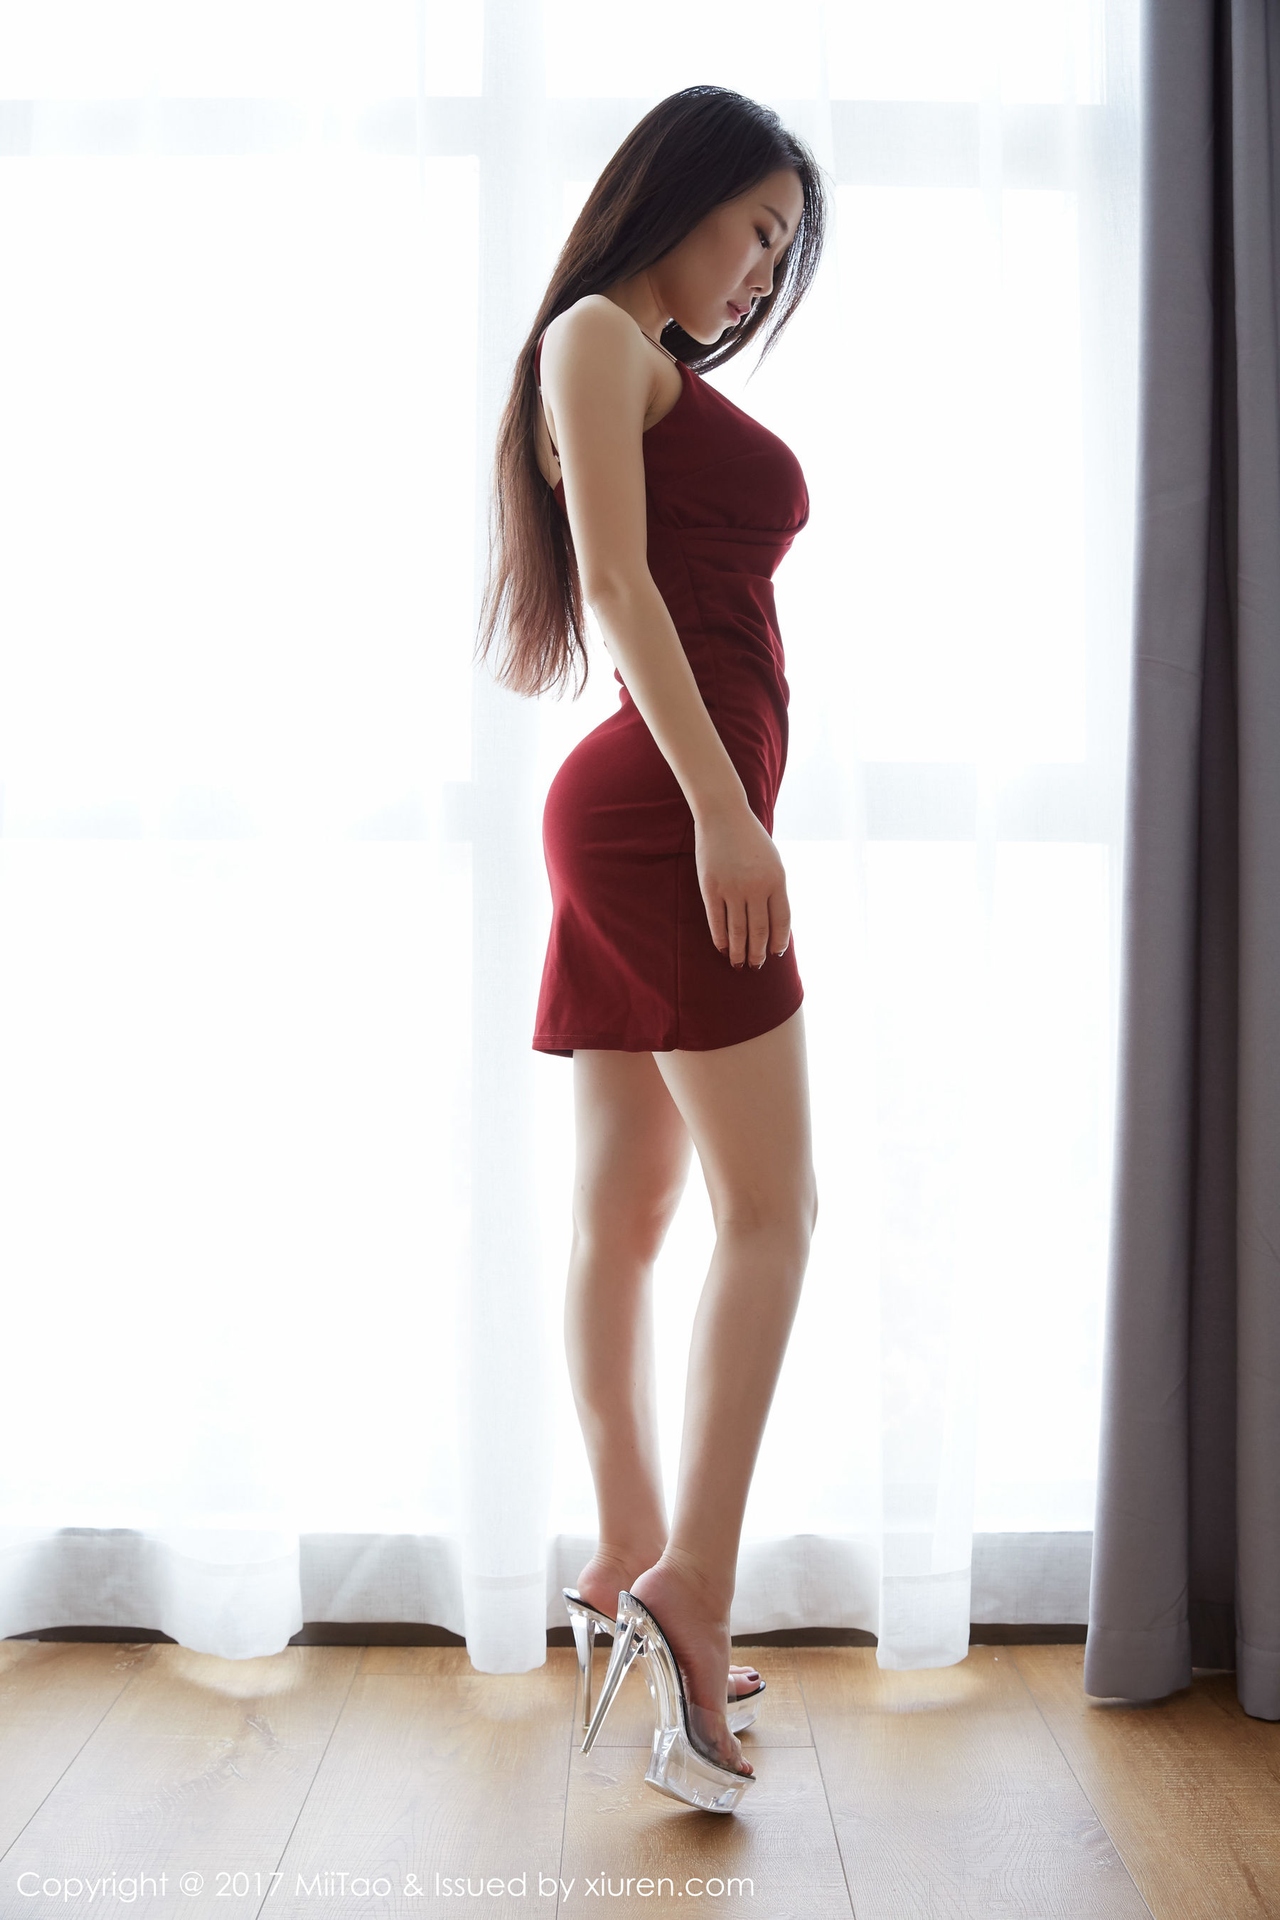 People 1280x1920 women model Asian Xiuren Chinese model legs minidress red dress women indoors ass long hair dark hair